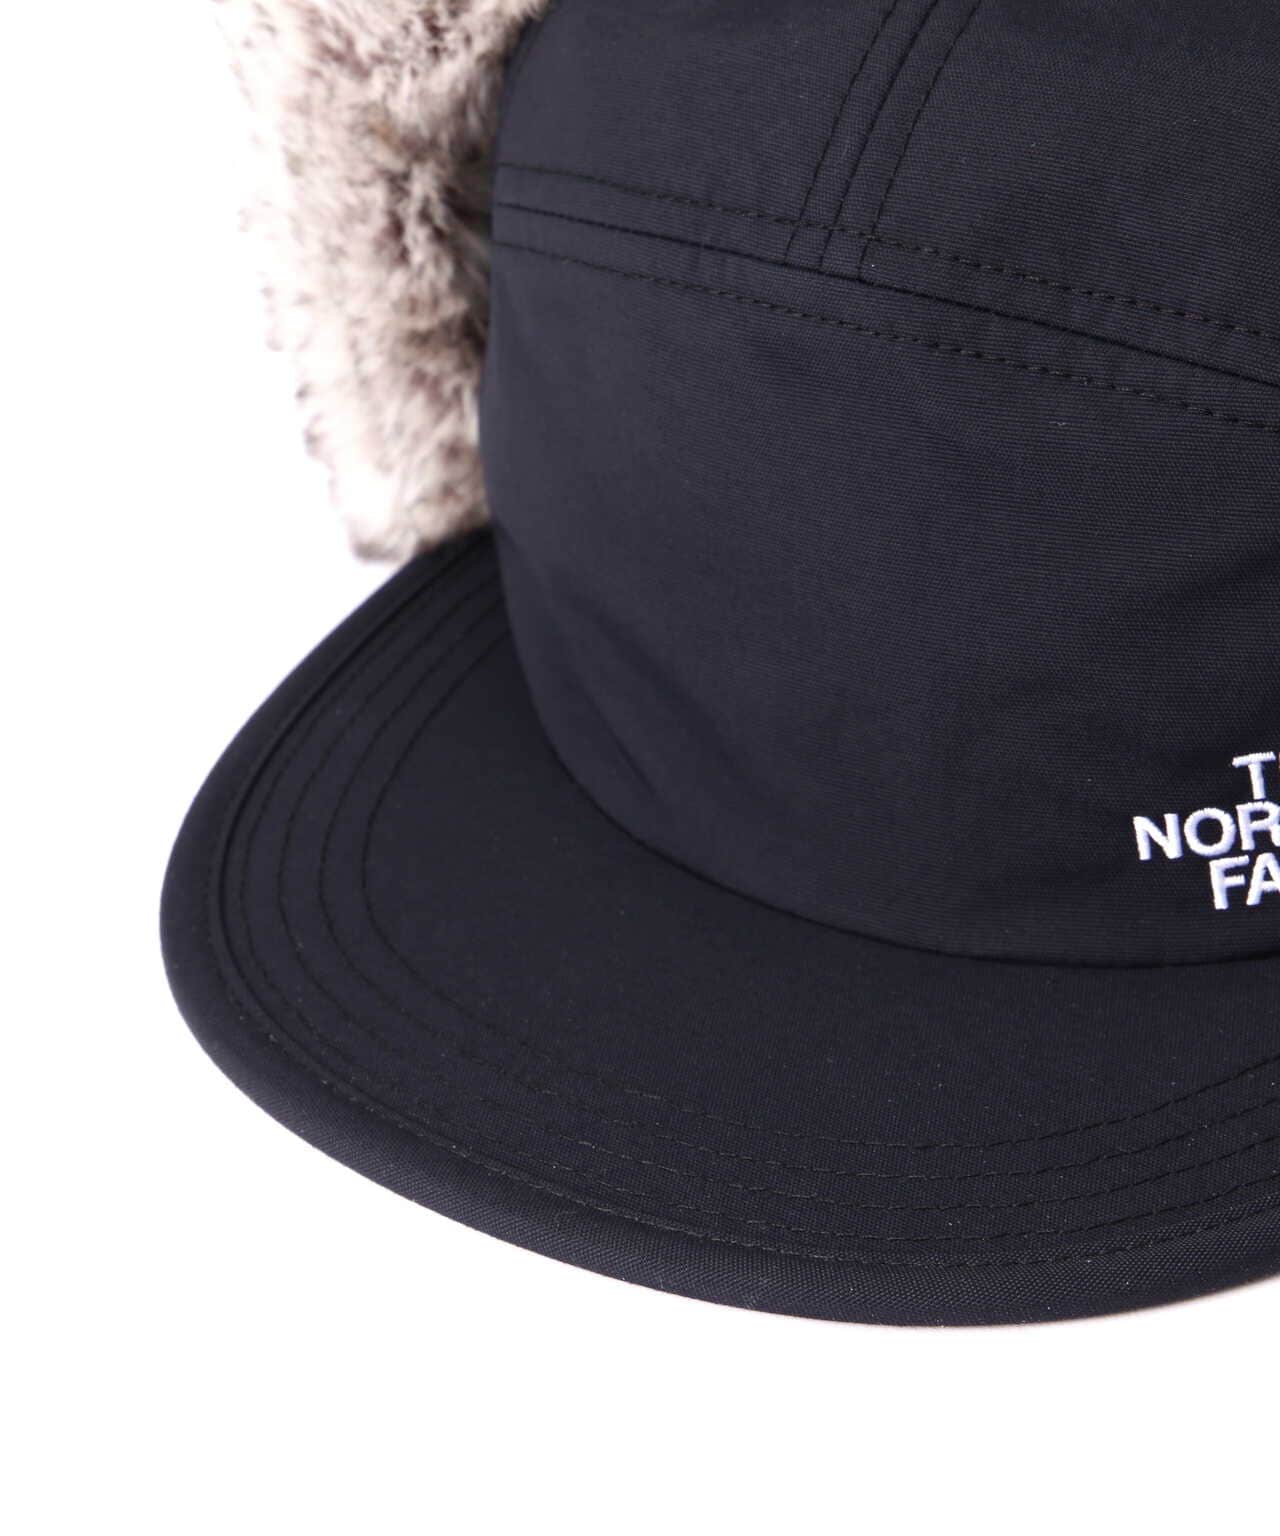 THE NORTH FACE/ザ・ノースフェイス/Badland Cap/バッドランドキャップ 